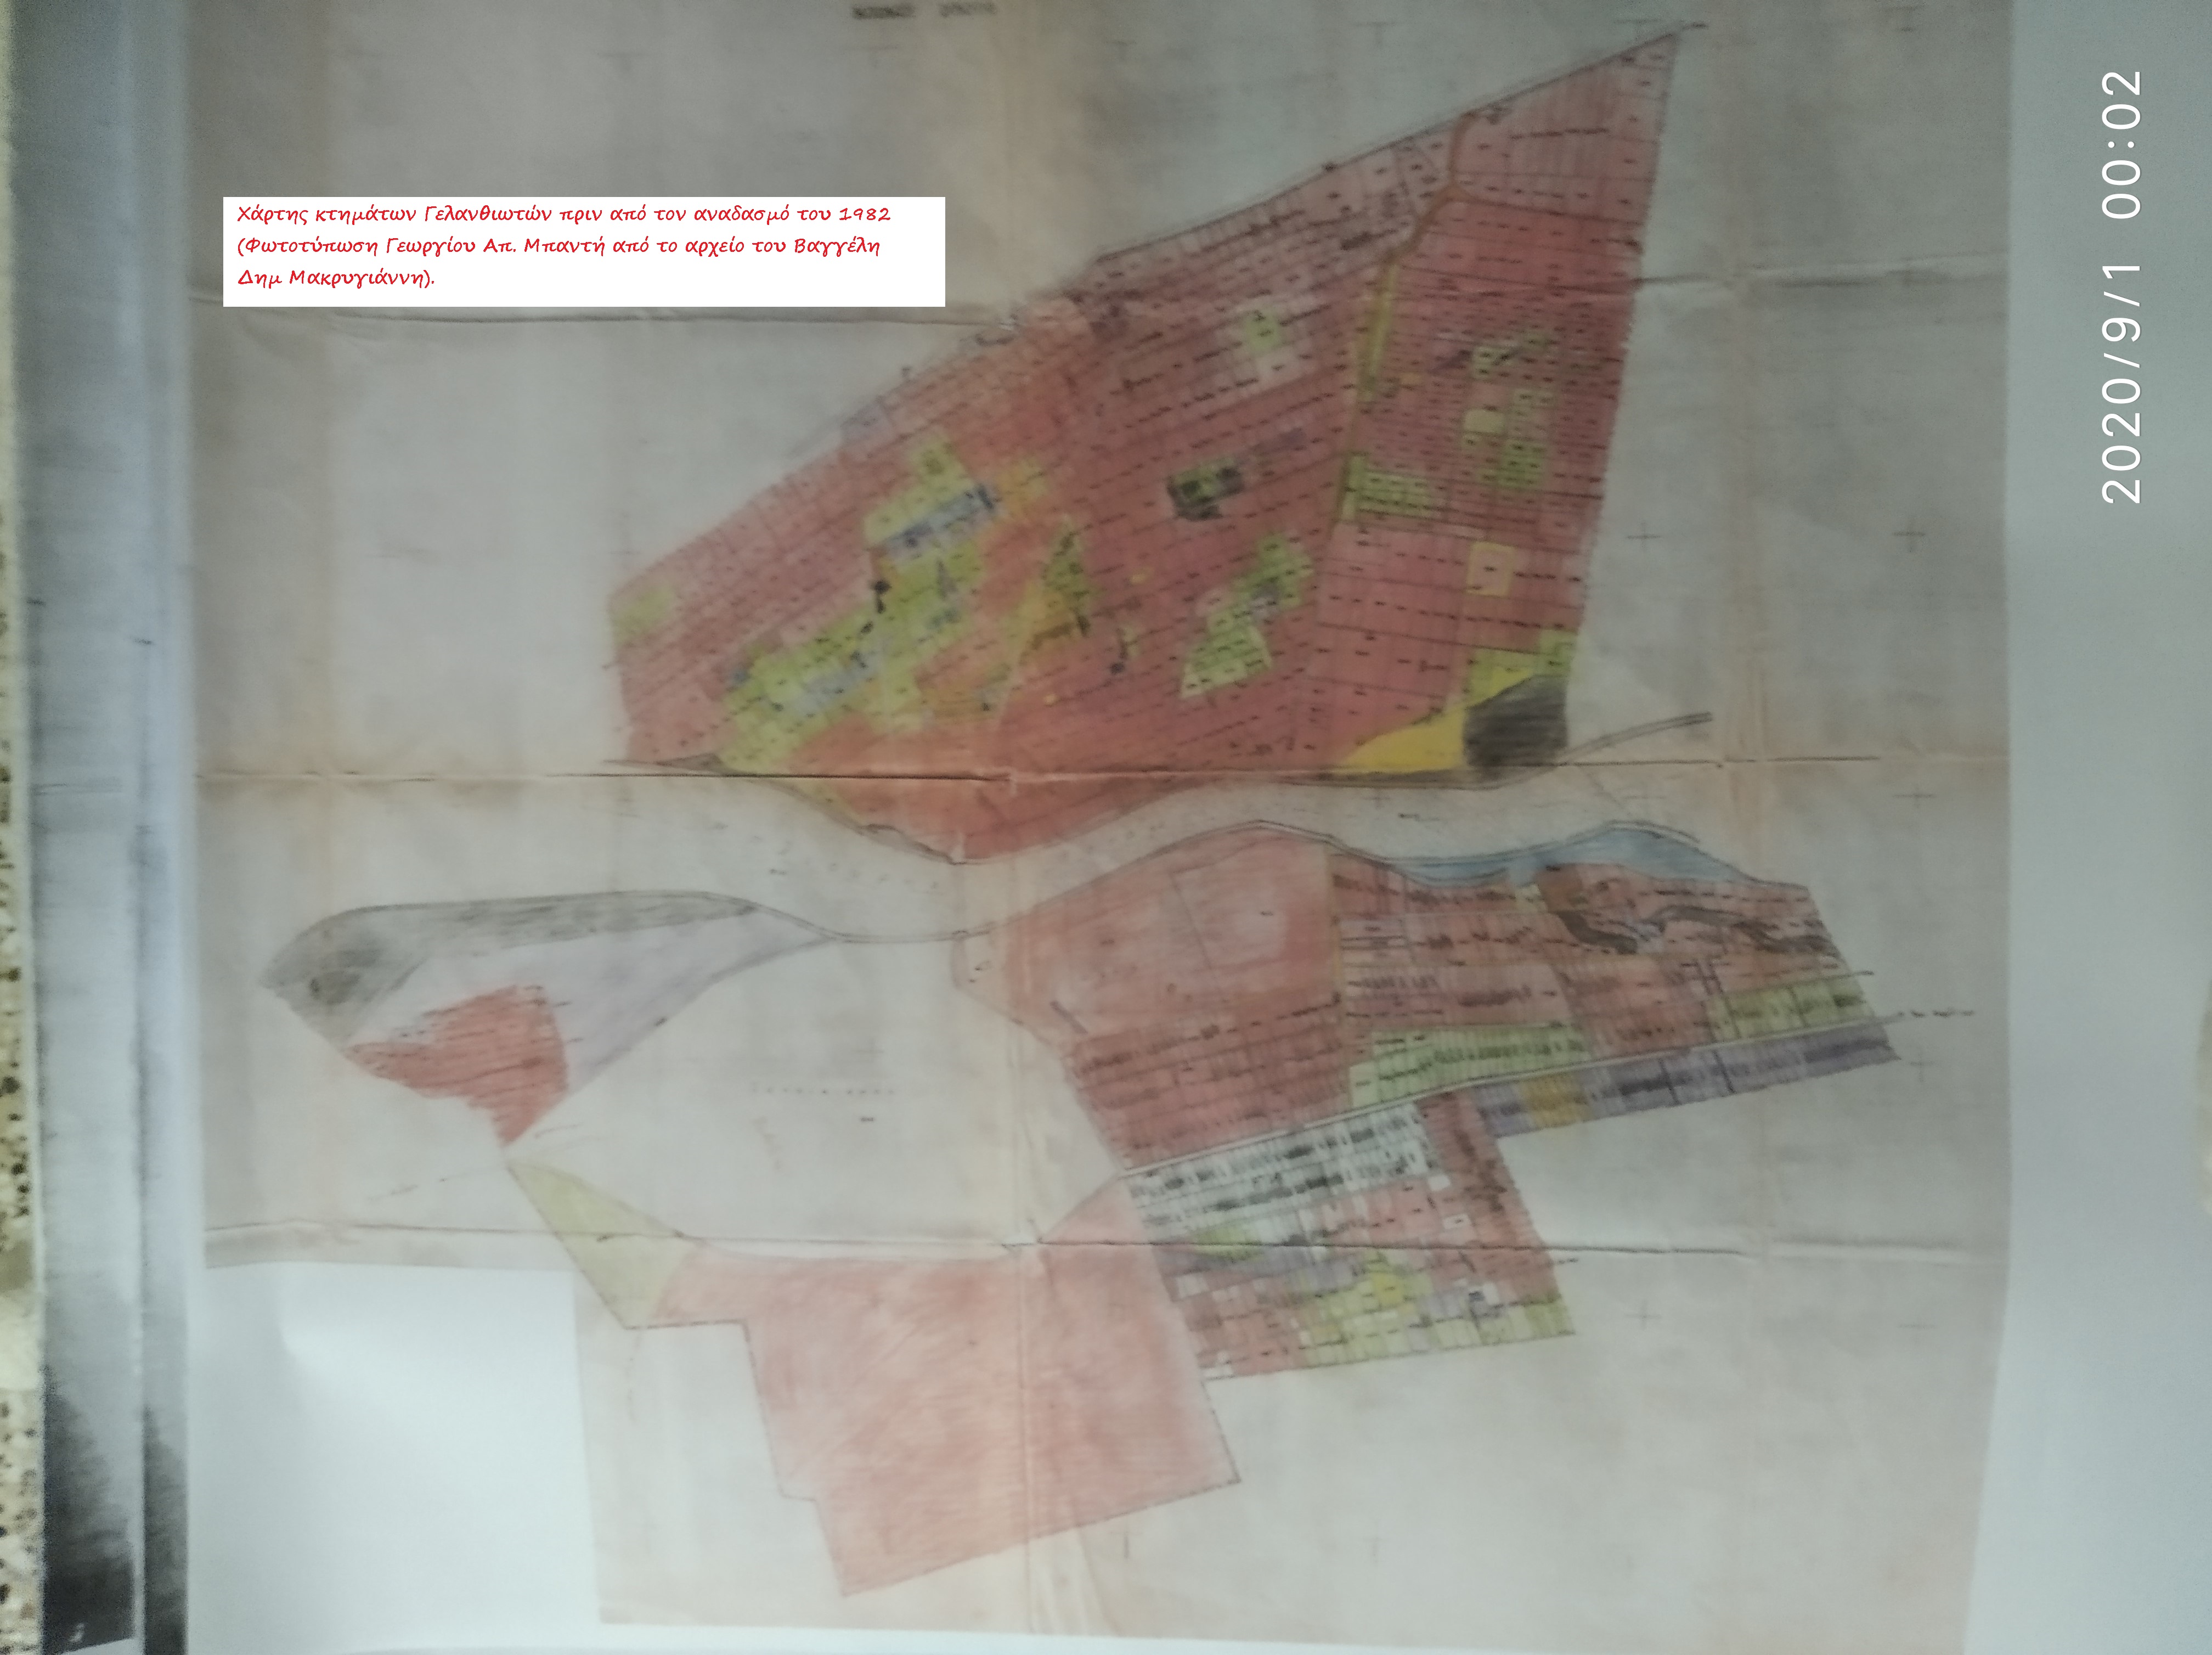 Χάρτης κτημάτων Γελανθιωτών πριν τον αναδασμό του 1982 (Αρχ. Βαγγέλη Δημ. Μακρυγιάννη, φωτοτύπωση Γεωργίου Απ. Μπαντή)